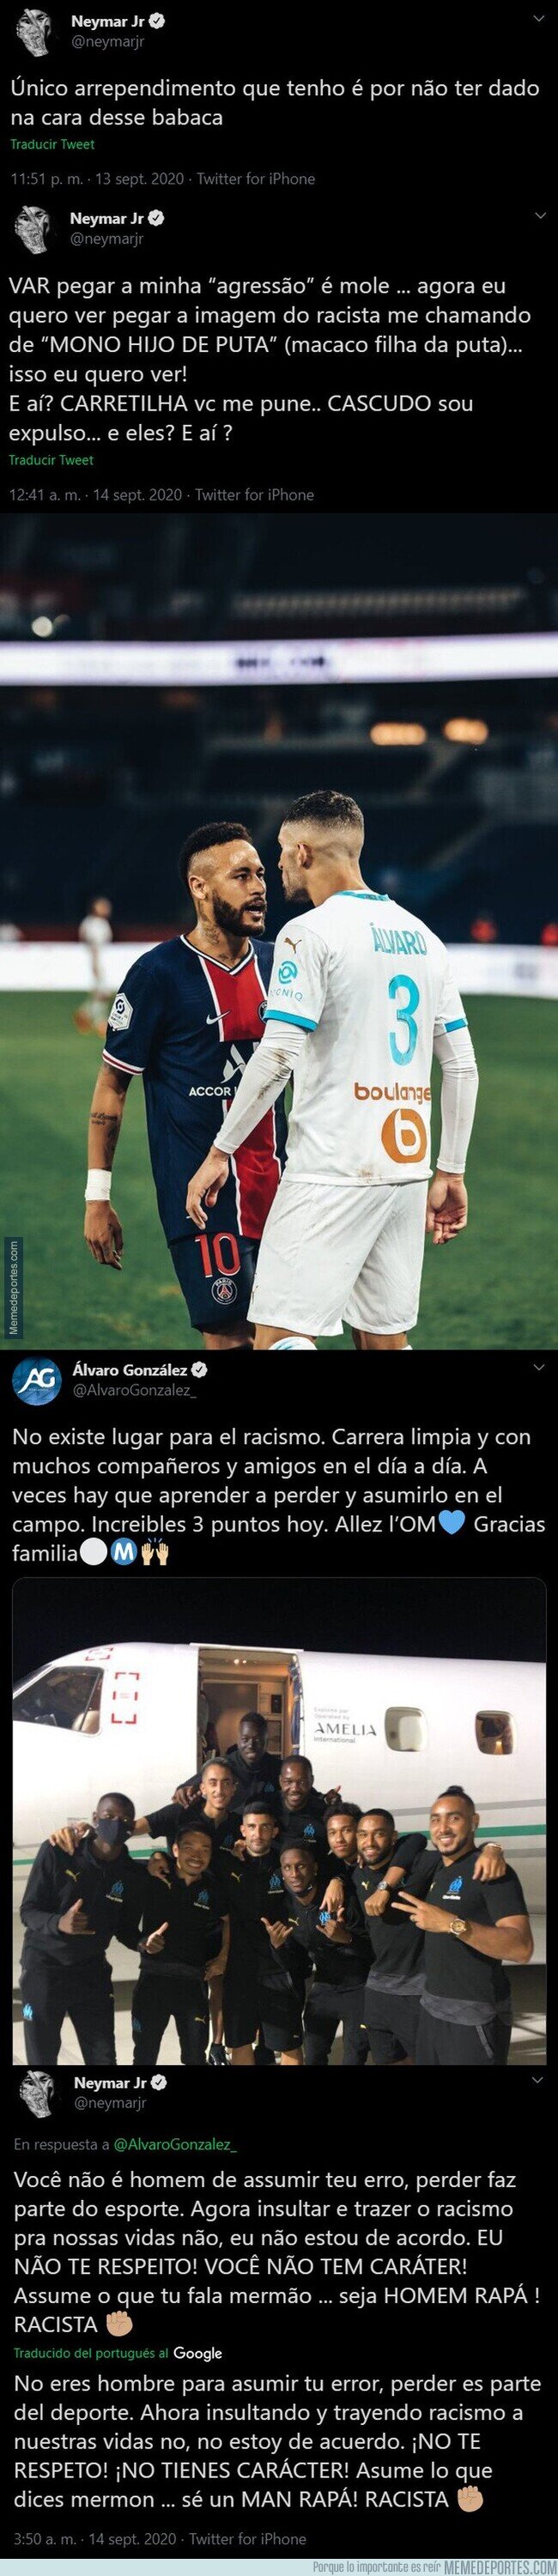 1115676 - Los duros mensajes de Neymar contra Álvaro González acusándole de racismo después del clásico francés